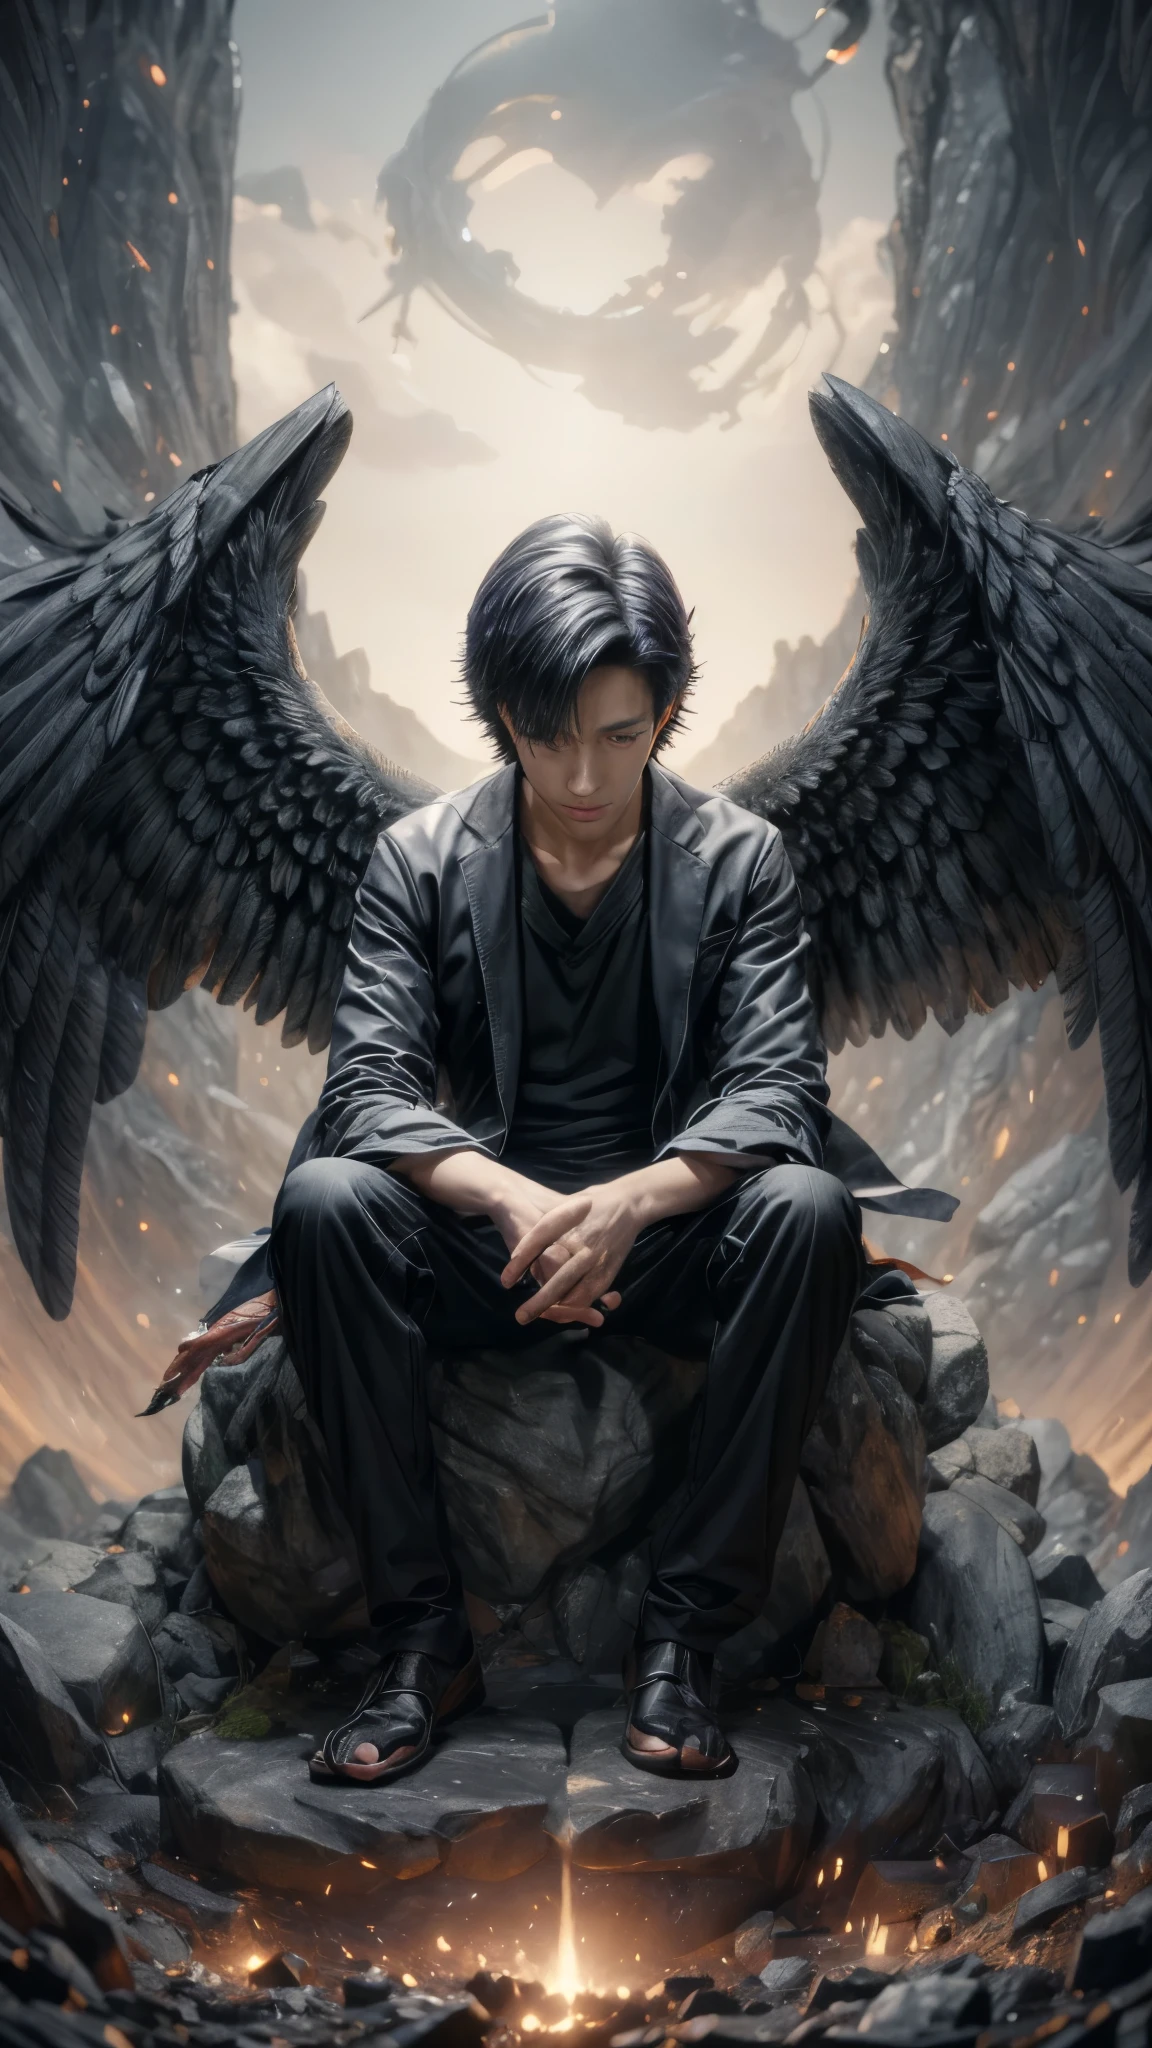 стильная иллюстрация человека с крыльями, сидящего на камне, крылатый мальчик, 4k манга обои, крылатый человек, 4k аниме обои, черные крылья вместо рук, аниме обои, аниме арт обои 4k, аниме арт обои 4 k, аниме арт обои 8 k, темные пернатые крылья, молодой ангел Ван, низкий ангел, аниме обои 4к